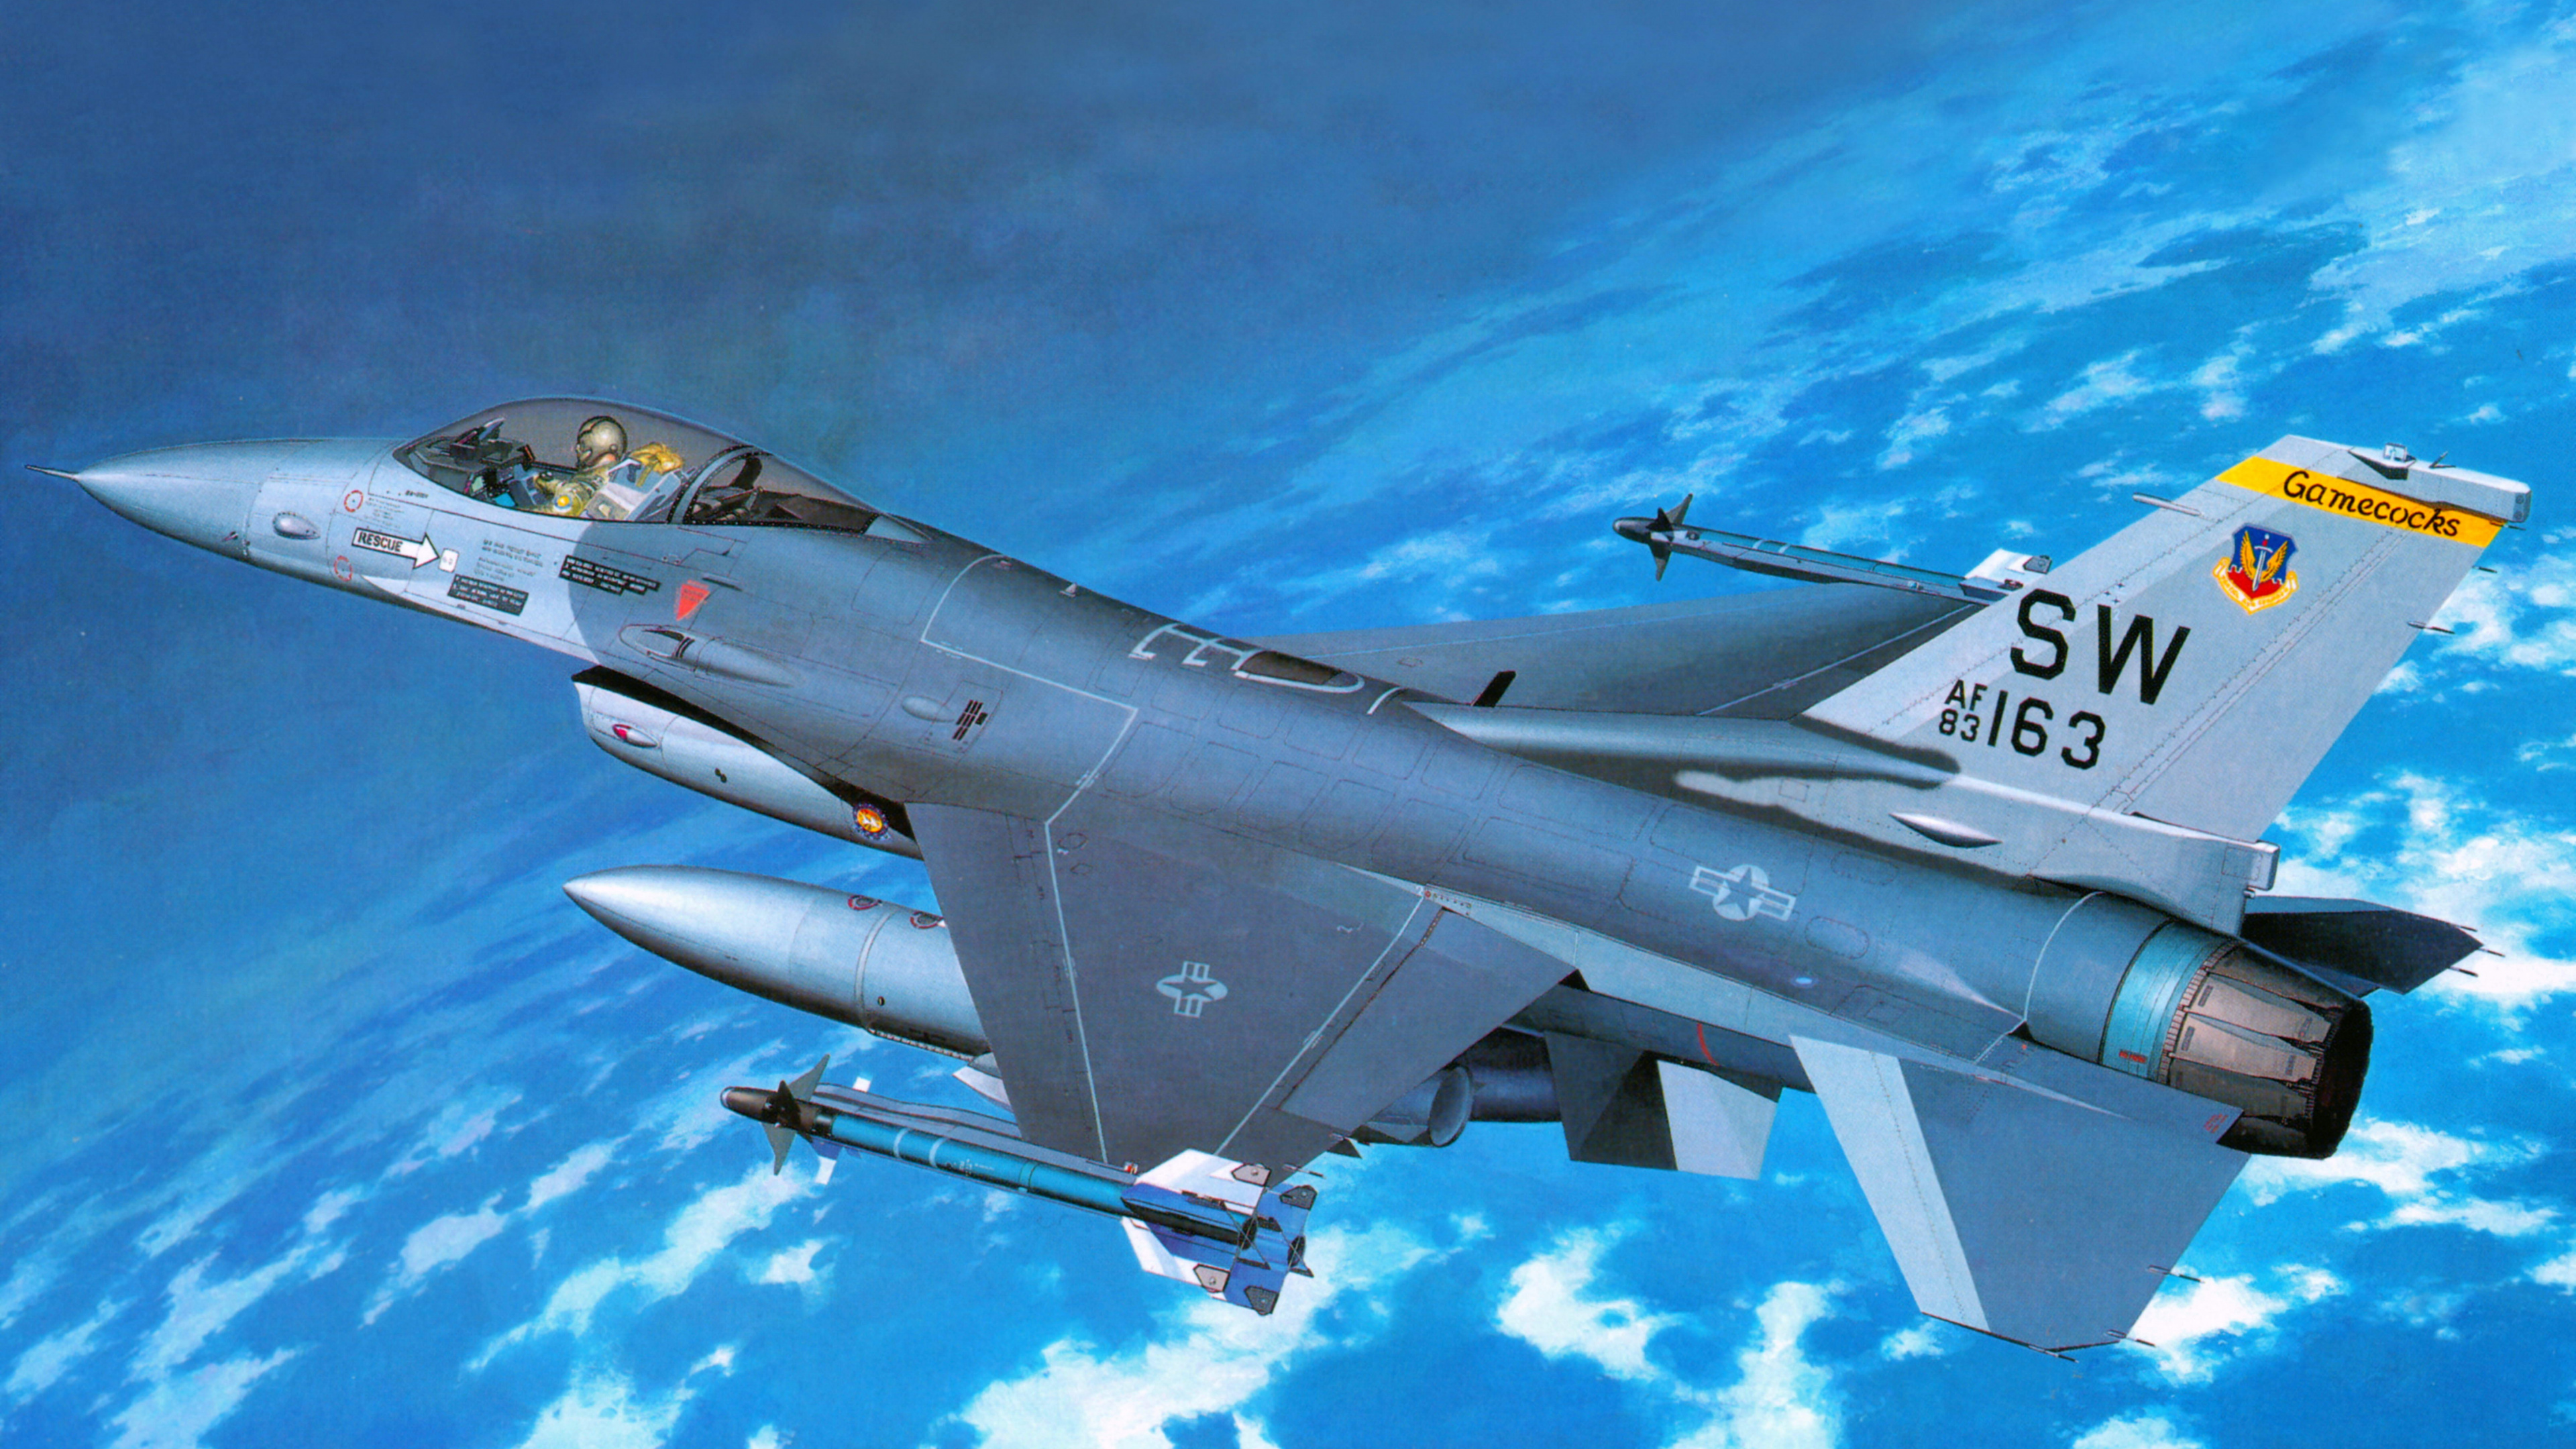 长谷川公司, 塑料模型, 军用飞机, 航空, 空军 壁纸 3840x2160 允许